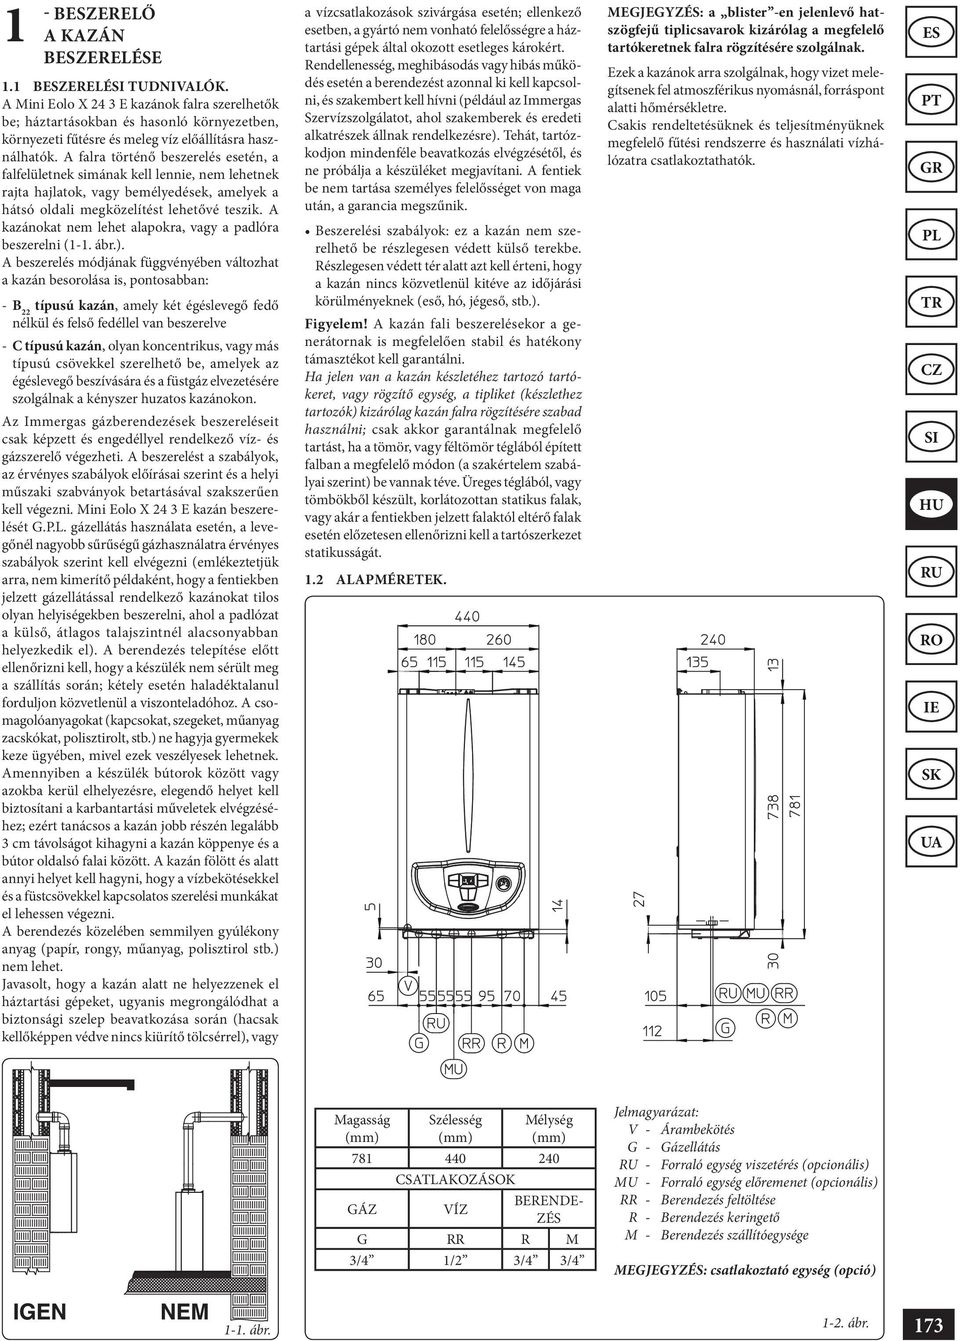 MINI Eolo X 24 3 E. Használati utasítás és figyelmeztetések - PDF Ingyenes  letöltés